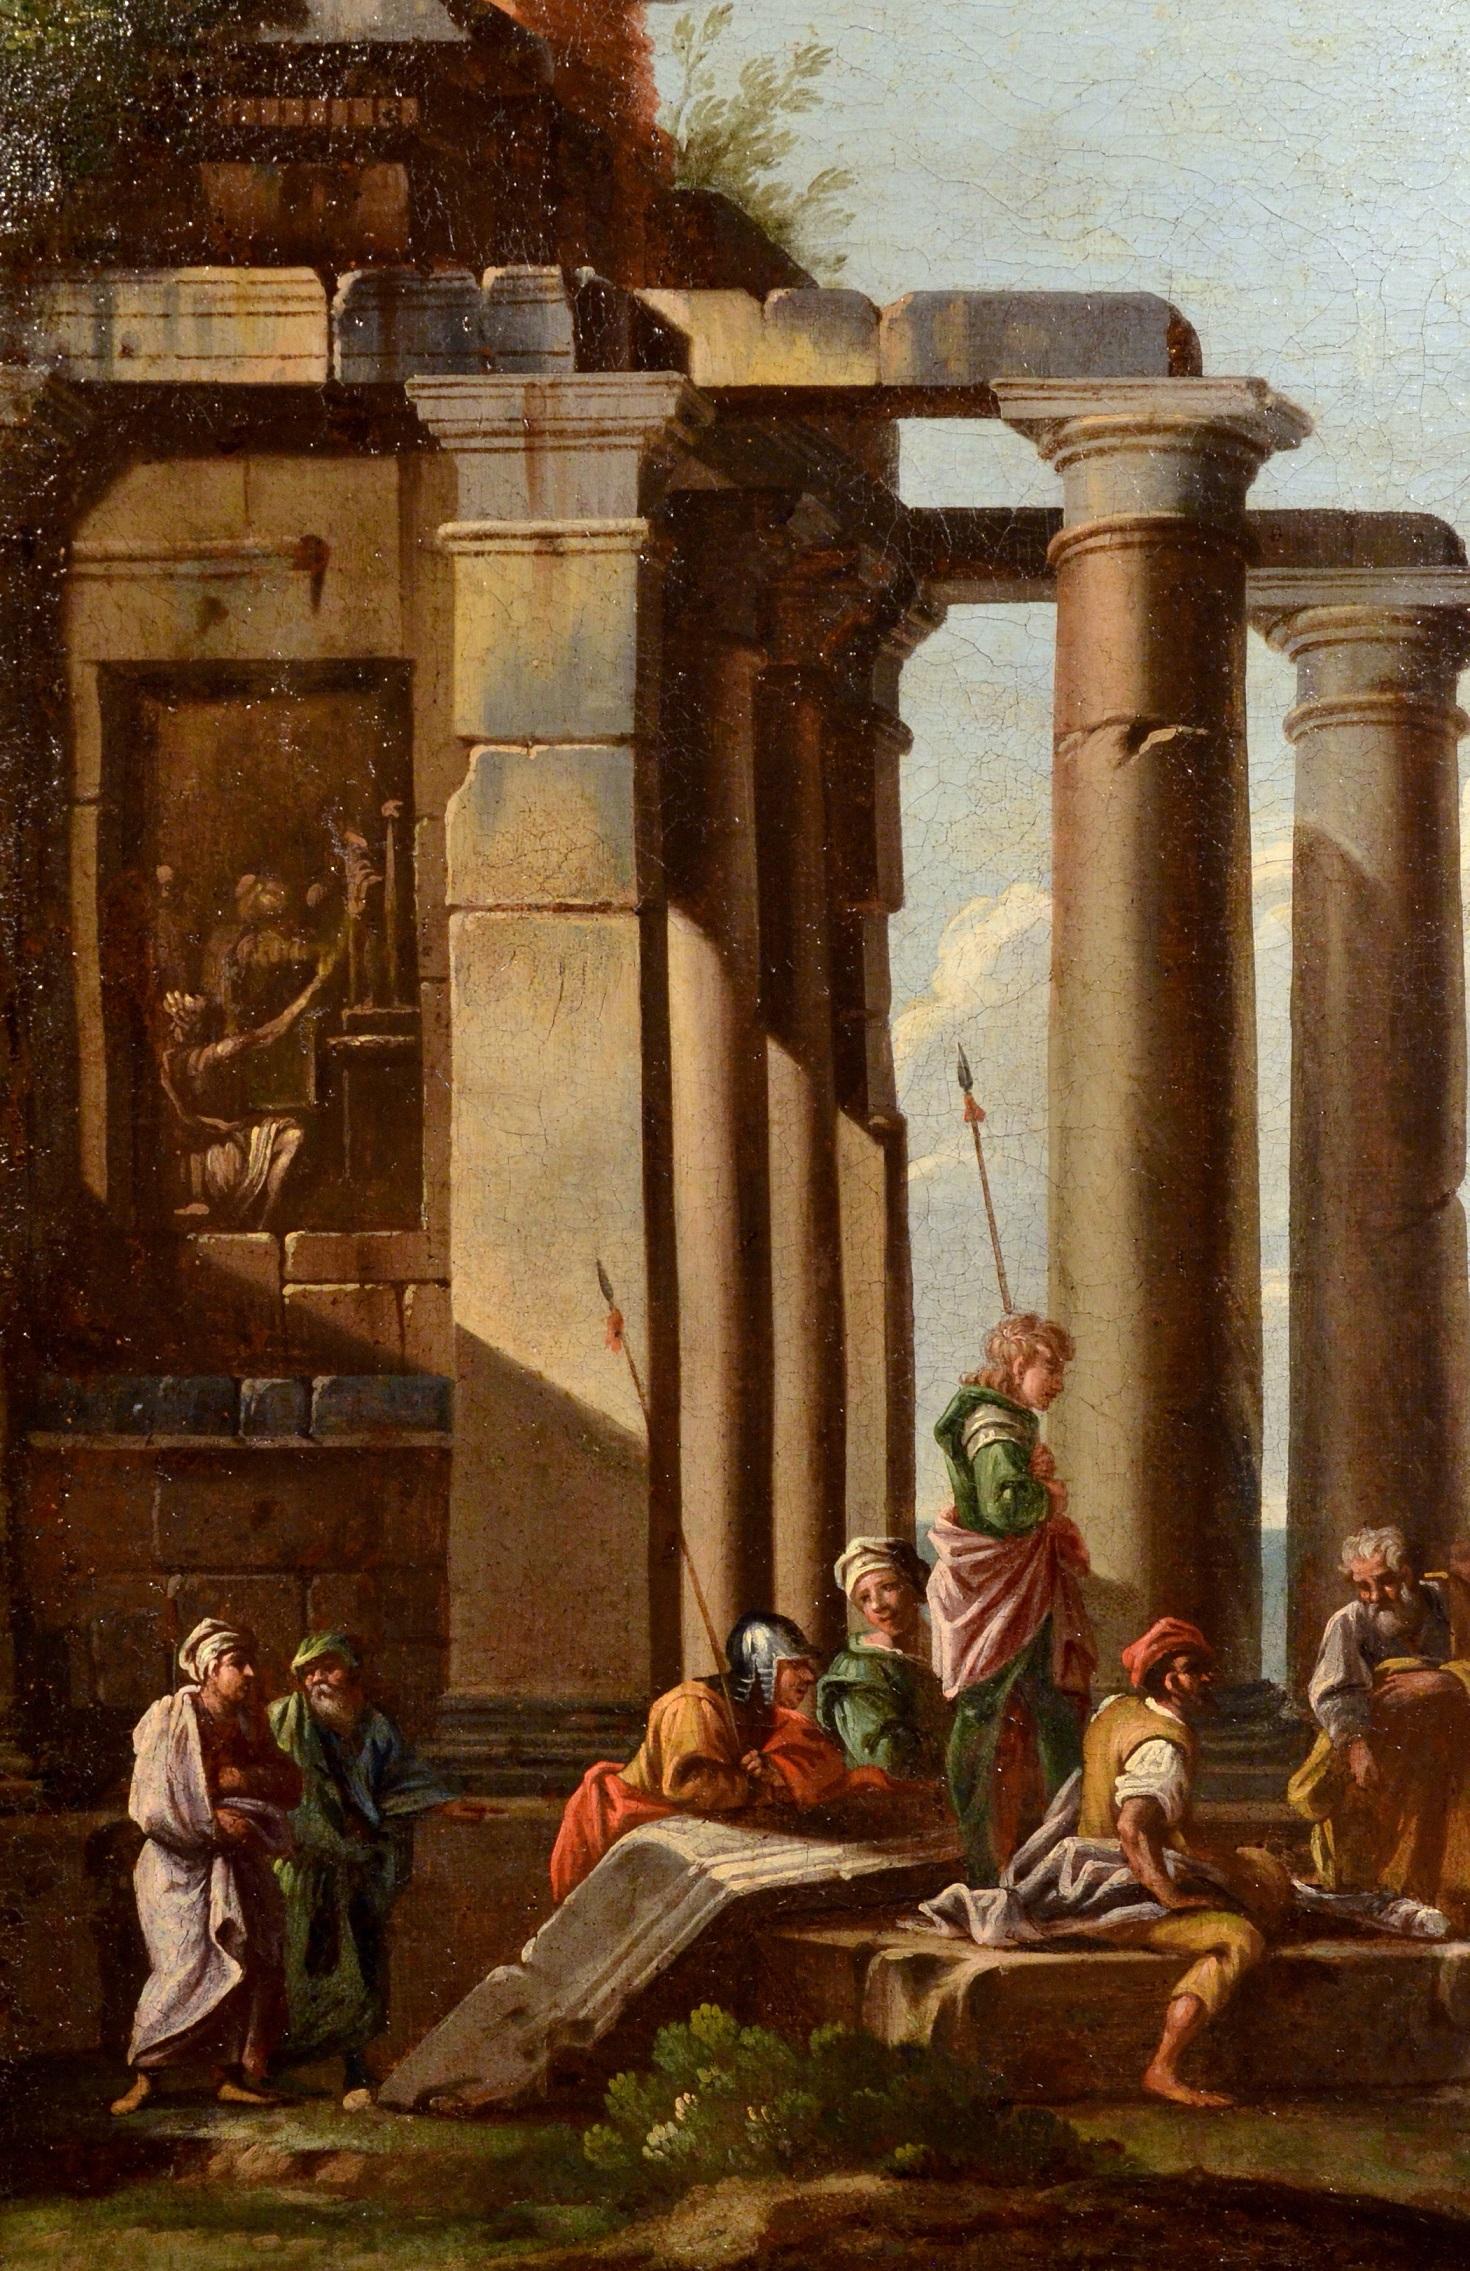 Giovanni Ghisolfi
(Mailand 1623 - 1683)
Architektonisches Capriccio mit Ruinen eines ionischen Tempels

Ölgemälde auf Leinwand
73 x 87 cm,
in einem vergoldeten Holzrahmen 87 x 100 cm.

Diese qualitative Ansicht mit Laune vor dem Hintergrund eines